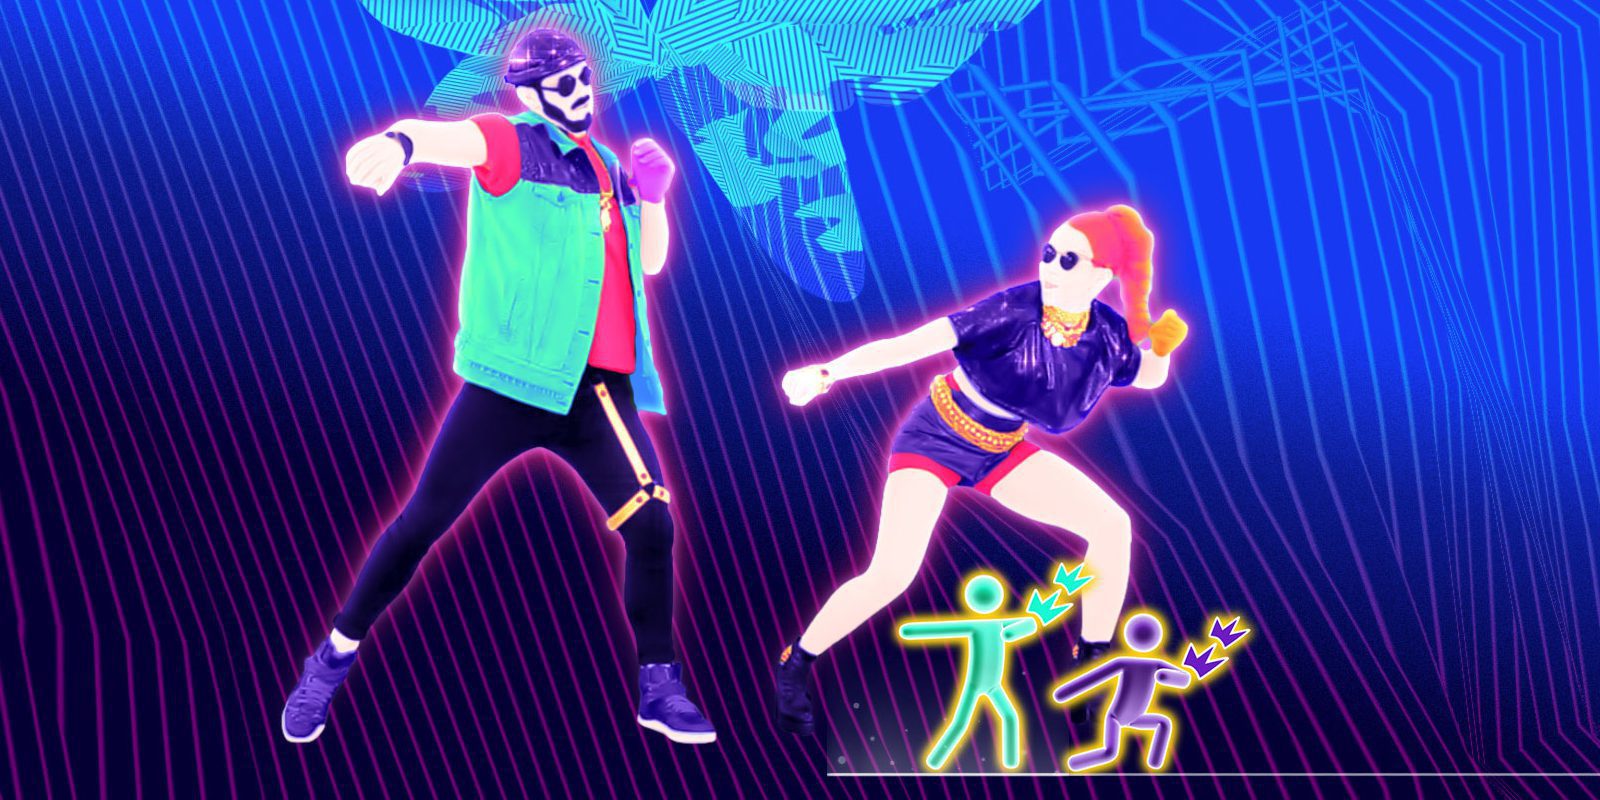 'Just Dance' vende más en Nintendo Wii que en consolas más actuales